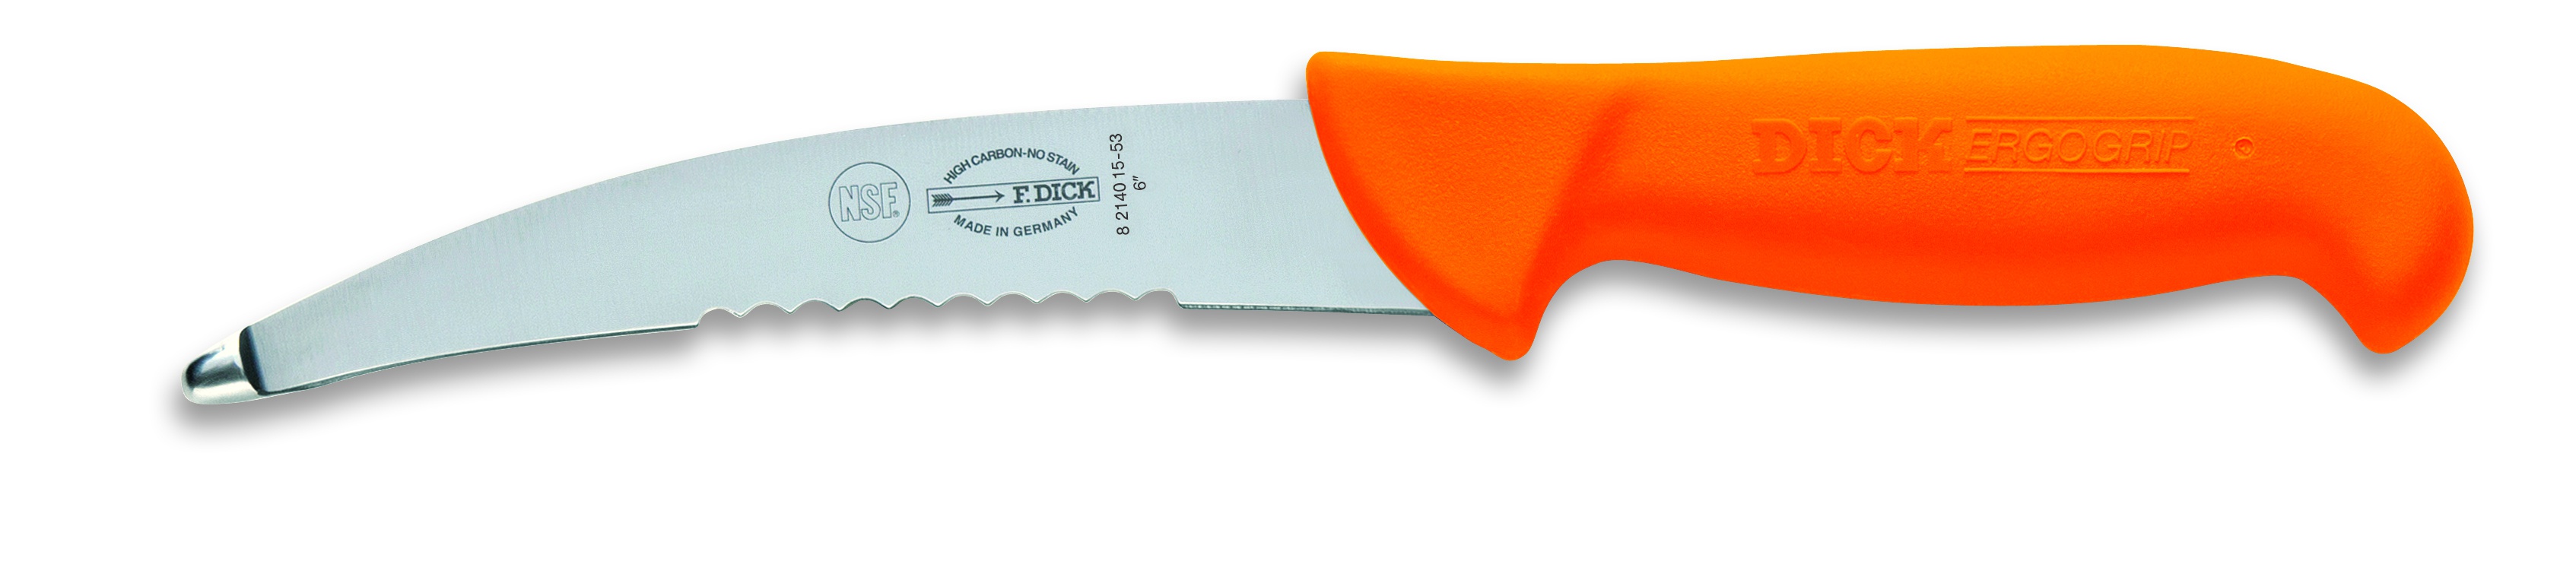 Nůž na vnitřnosti s částečně zubatým ostřím, oranžový, v délce 15 cm